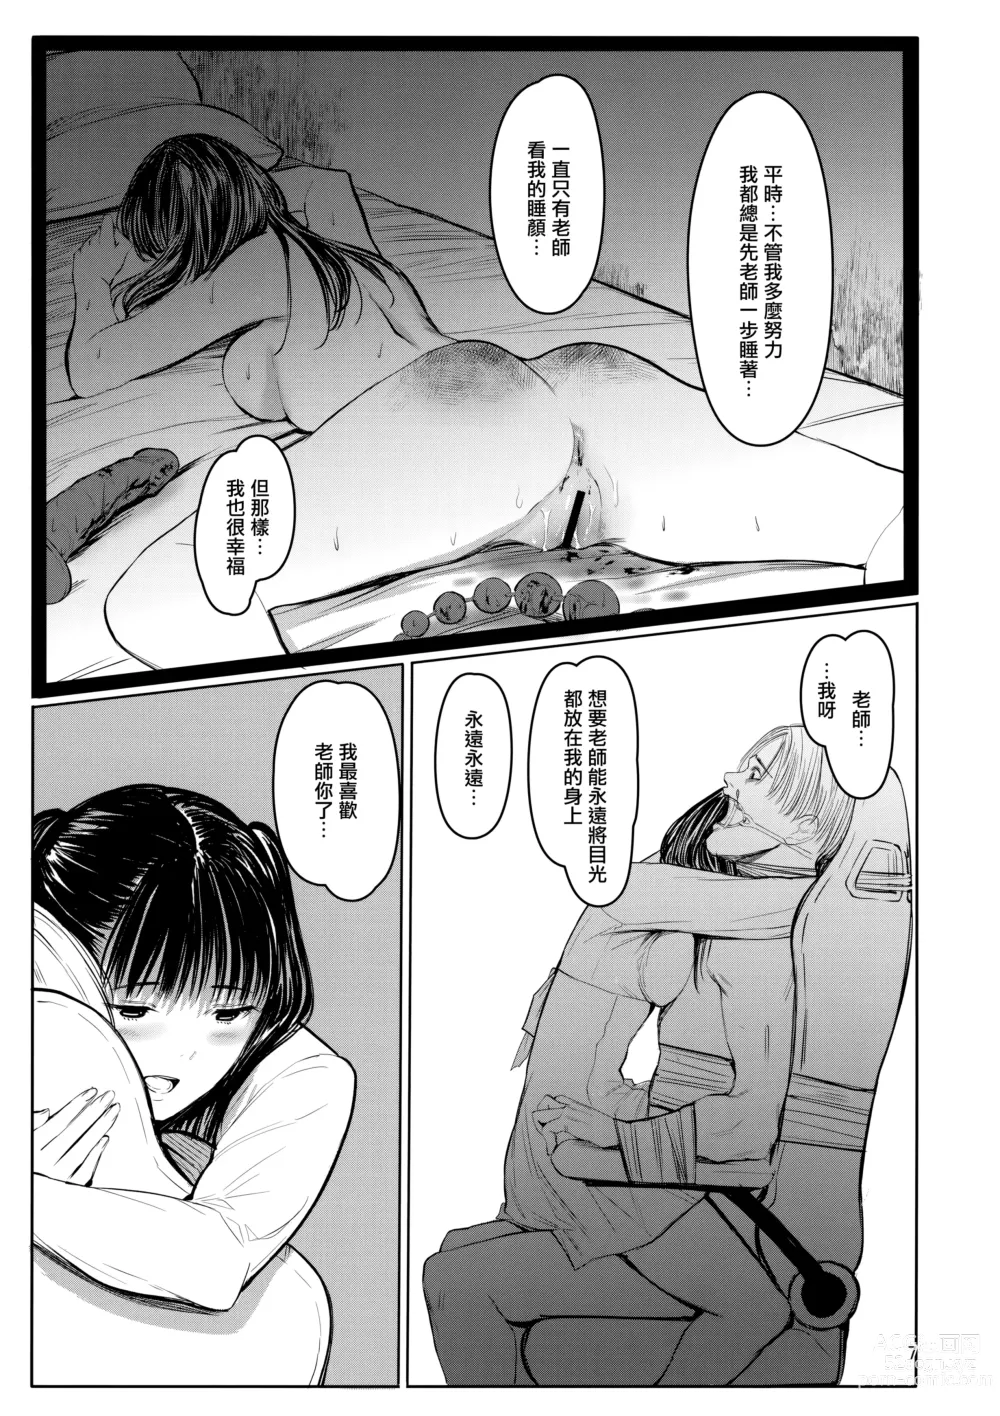 Page 6 of doujinshi Sensei